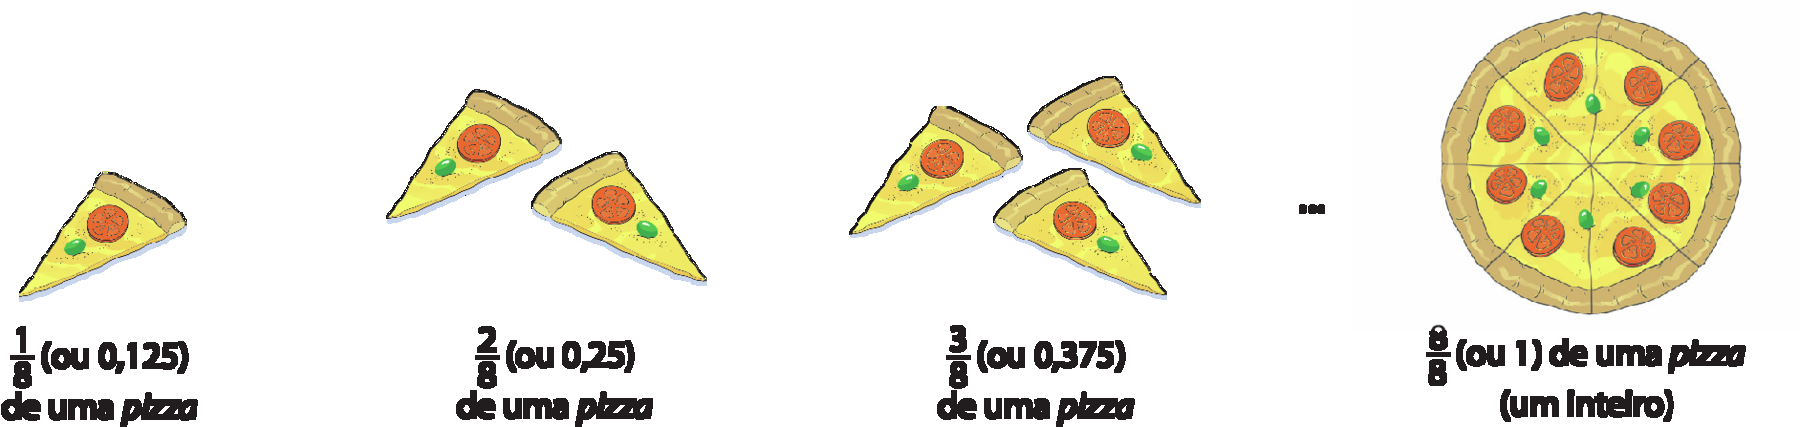 Ilustração. 1 fatia de pizza. Abaixo um oitavo, abre parênteses ou 0 vírgula 125 fecha parênteses, de uma pizza. Ao lado, ilustração de duas fatias de pizza. Abaixo dois oitavos, abre parênteses ou 0 vírgula 25 fecha parênteses, de uma pizza. Ao lado, ilustração de 3 fatias de pizza. Abaixo três oitavos, abre parênteses ou 0 vírgula 375 fecha parênteses, de uma pizza. Reticências. Ao lado, ilustração de 1 pizza inteira de 8 pedaços. Abaixo oito oitavos, abre parênteses ou 1 fecha parênteses, de uma pizza, abre parênteses um inteiro fecha parênteses.